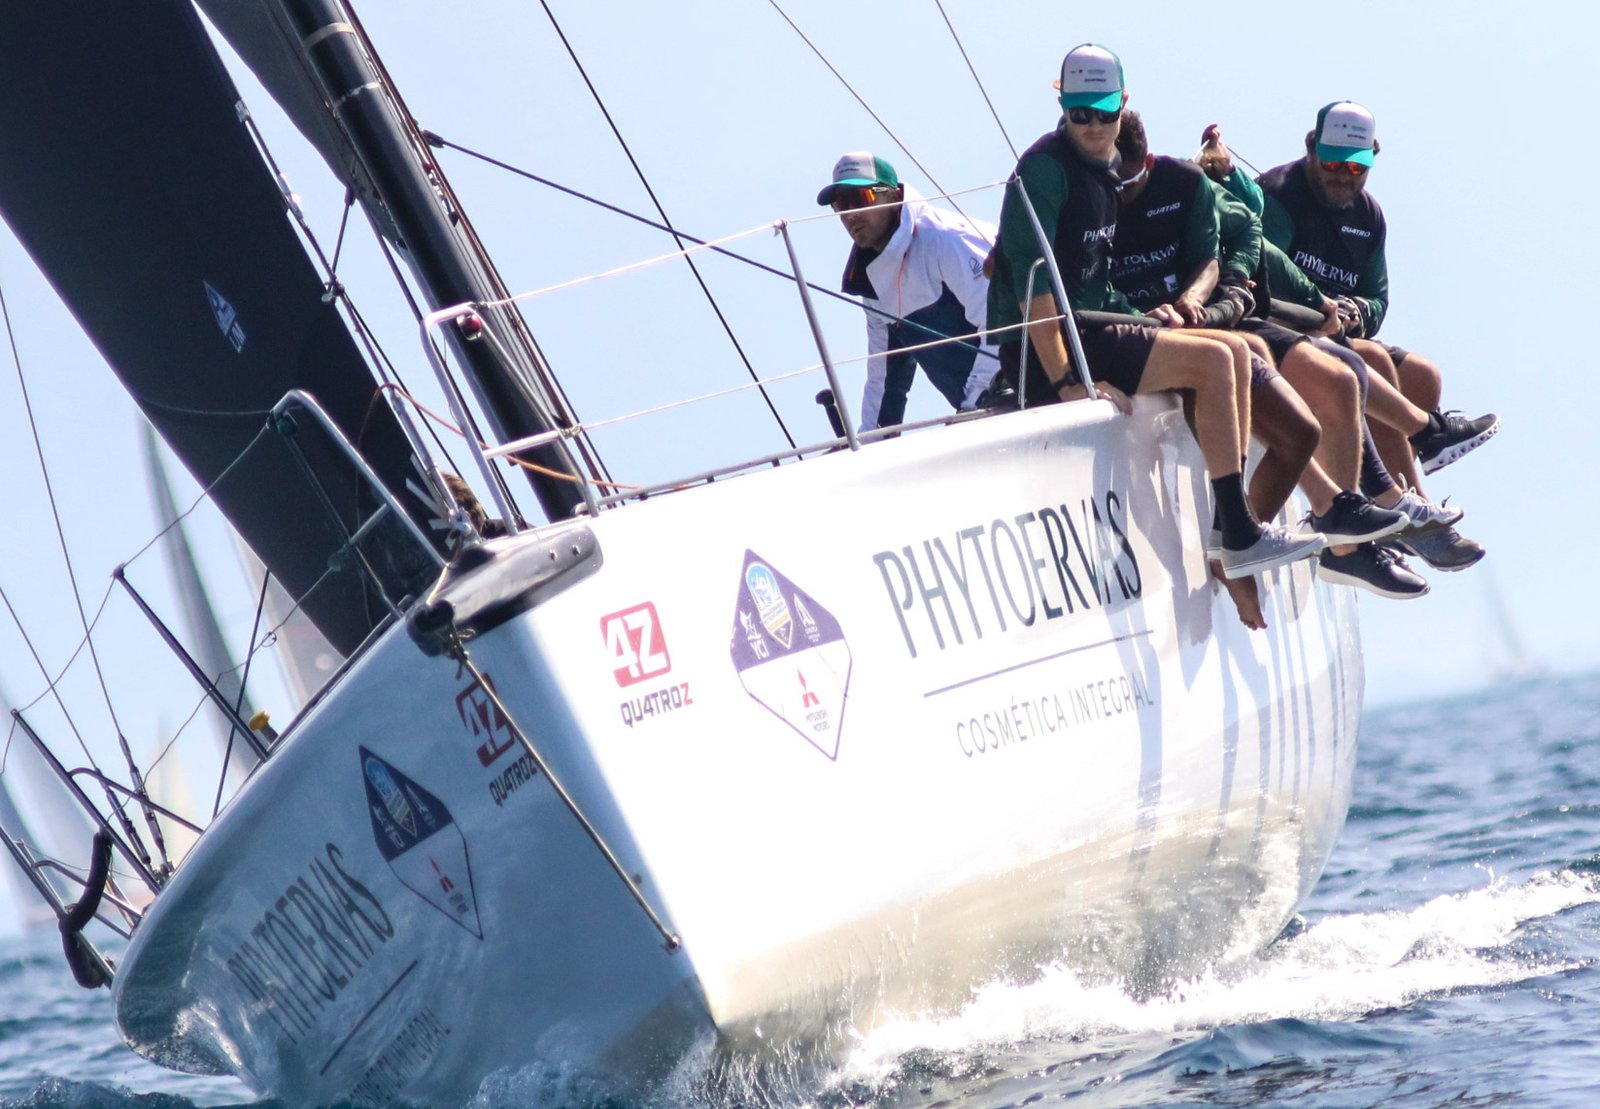 Equipe de vela oceânica Phytoervas 4Z ficou em terceiro lugar na Regata Volta da Ilha dos Arvoredos